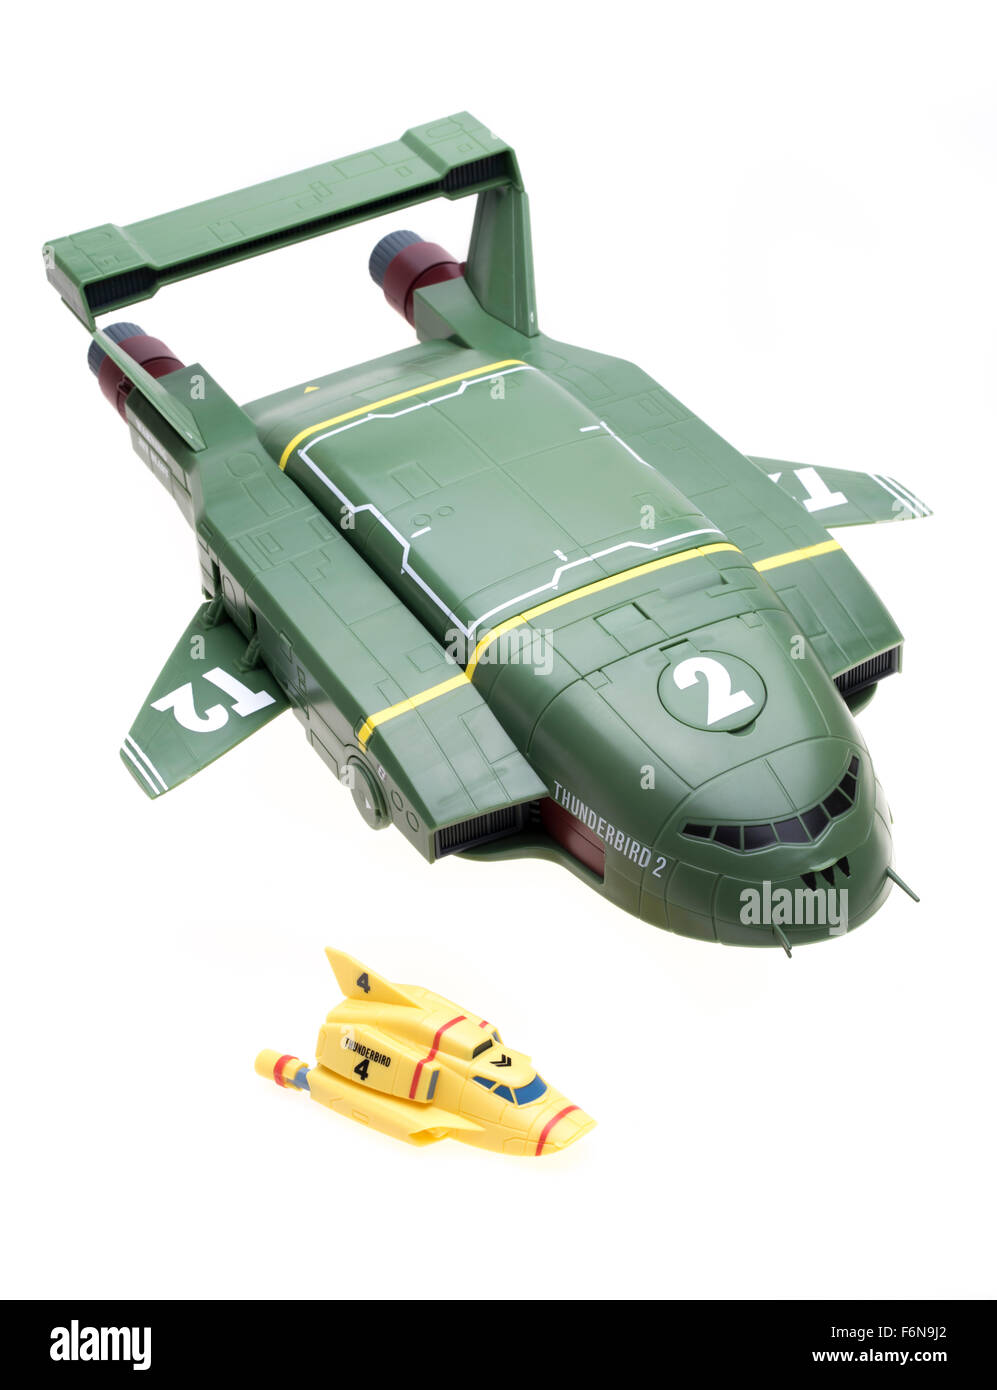 Thunderbird 2 & 4 Toy (2015) von Takara Tomy aus der klassischen britischen TV show von 1964-1966 Thunderbirds Stockfoto